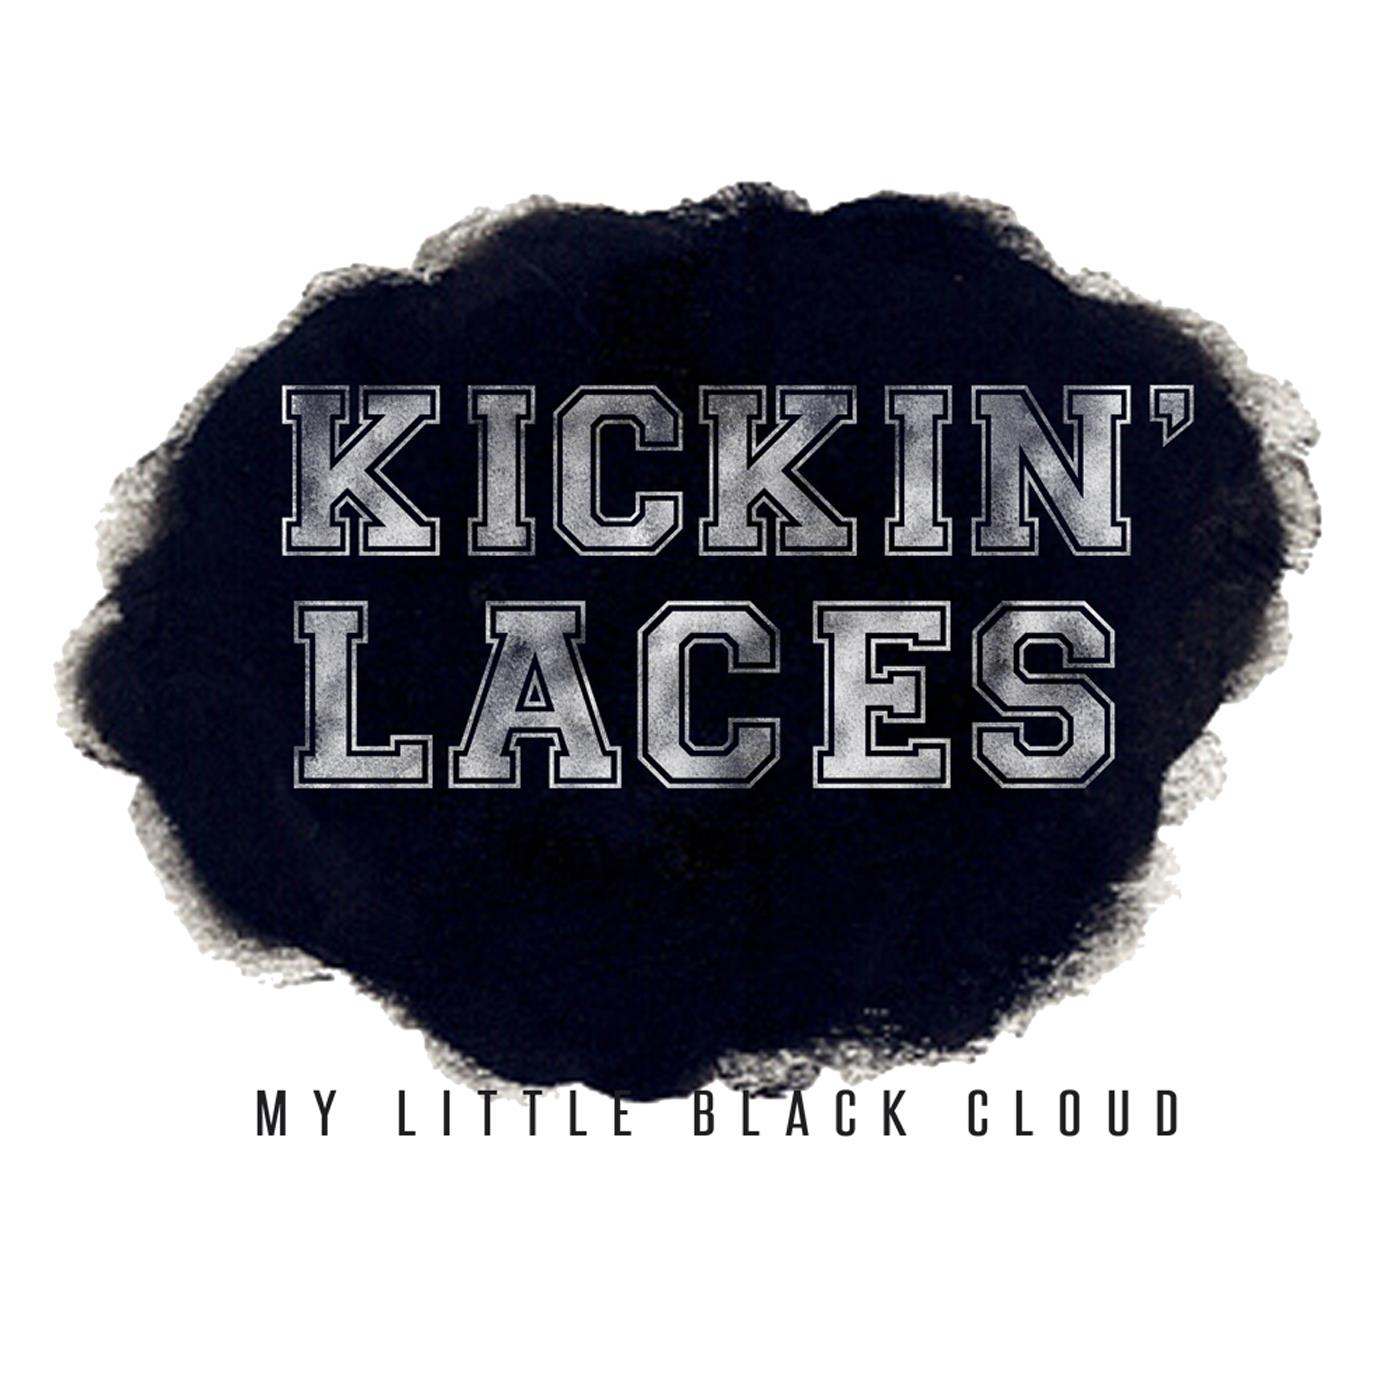 My Little Black Cloud - Single 2013